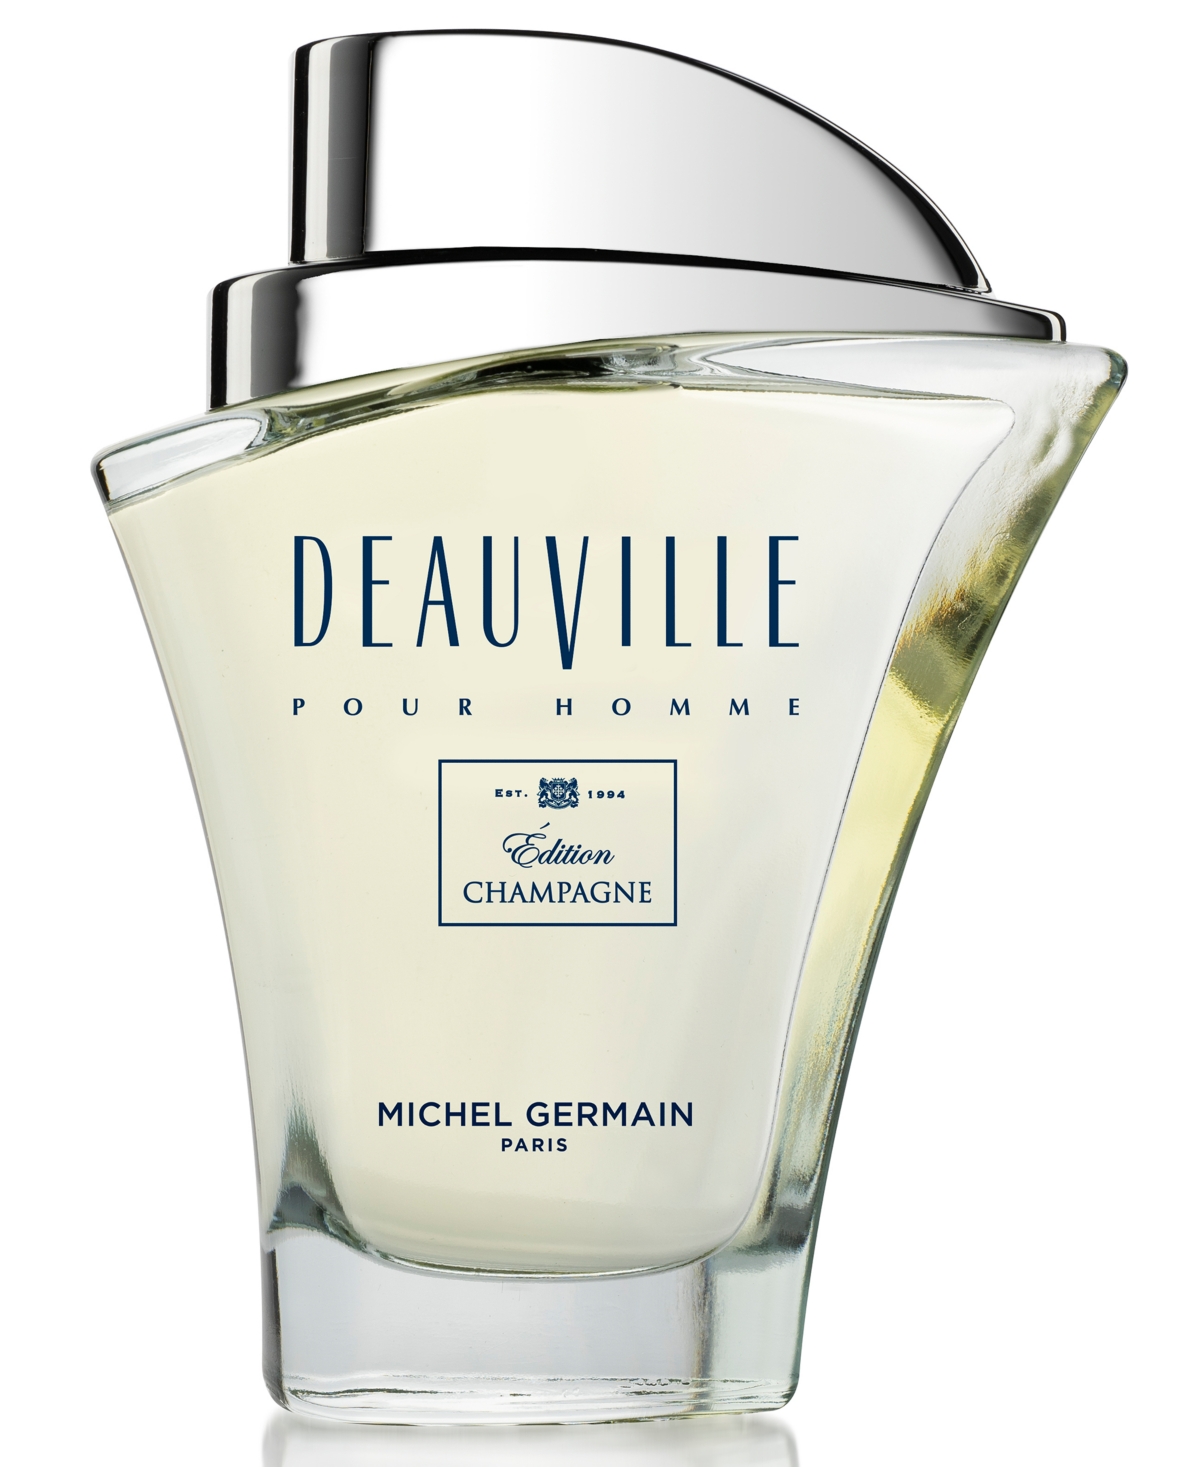 Michel Germain Men's Deauville Pour Homme Edition Champagne Eau de Toilette, 2.5-oz.